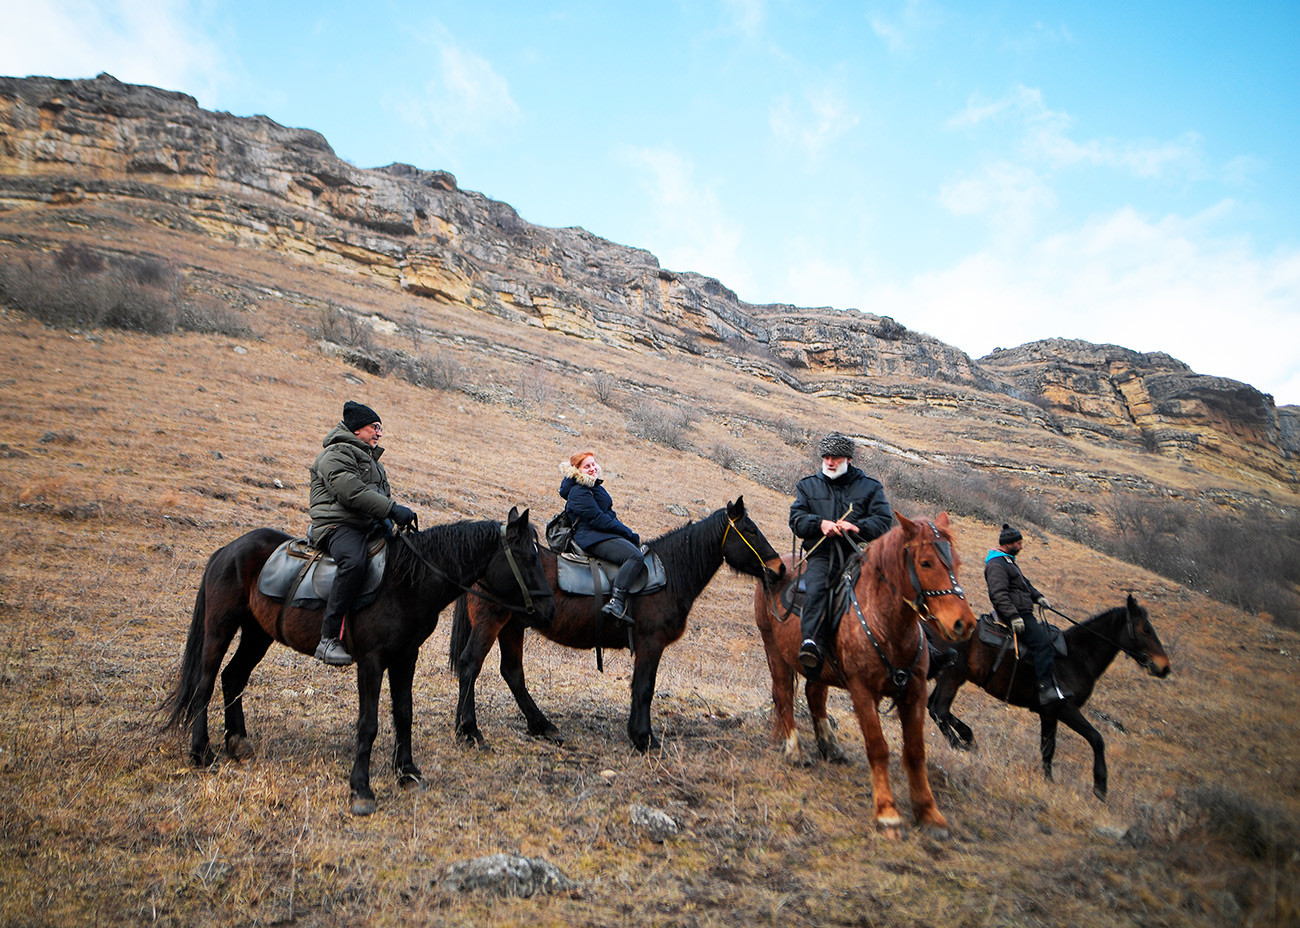 クラースヌィ・クルガン村で乗馬クラブ「グン」の馬に乗っている観光客。